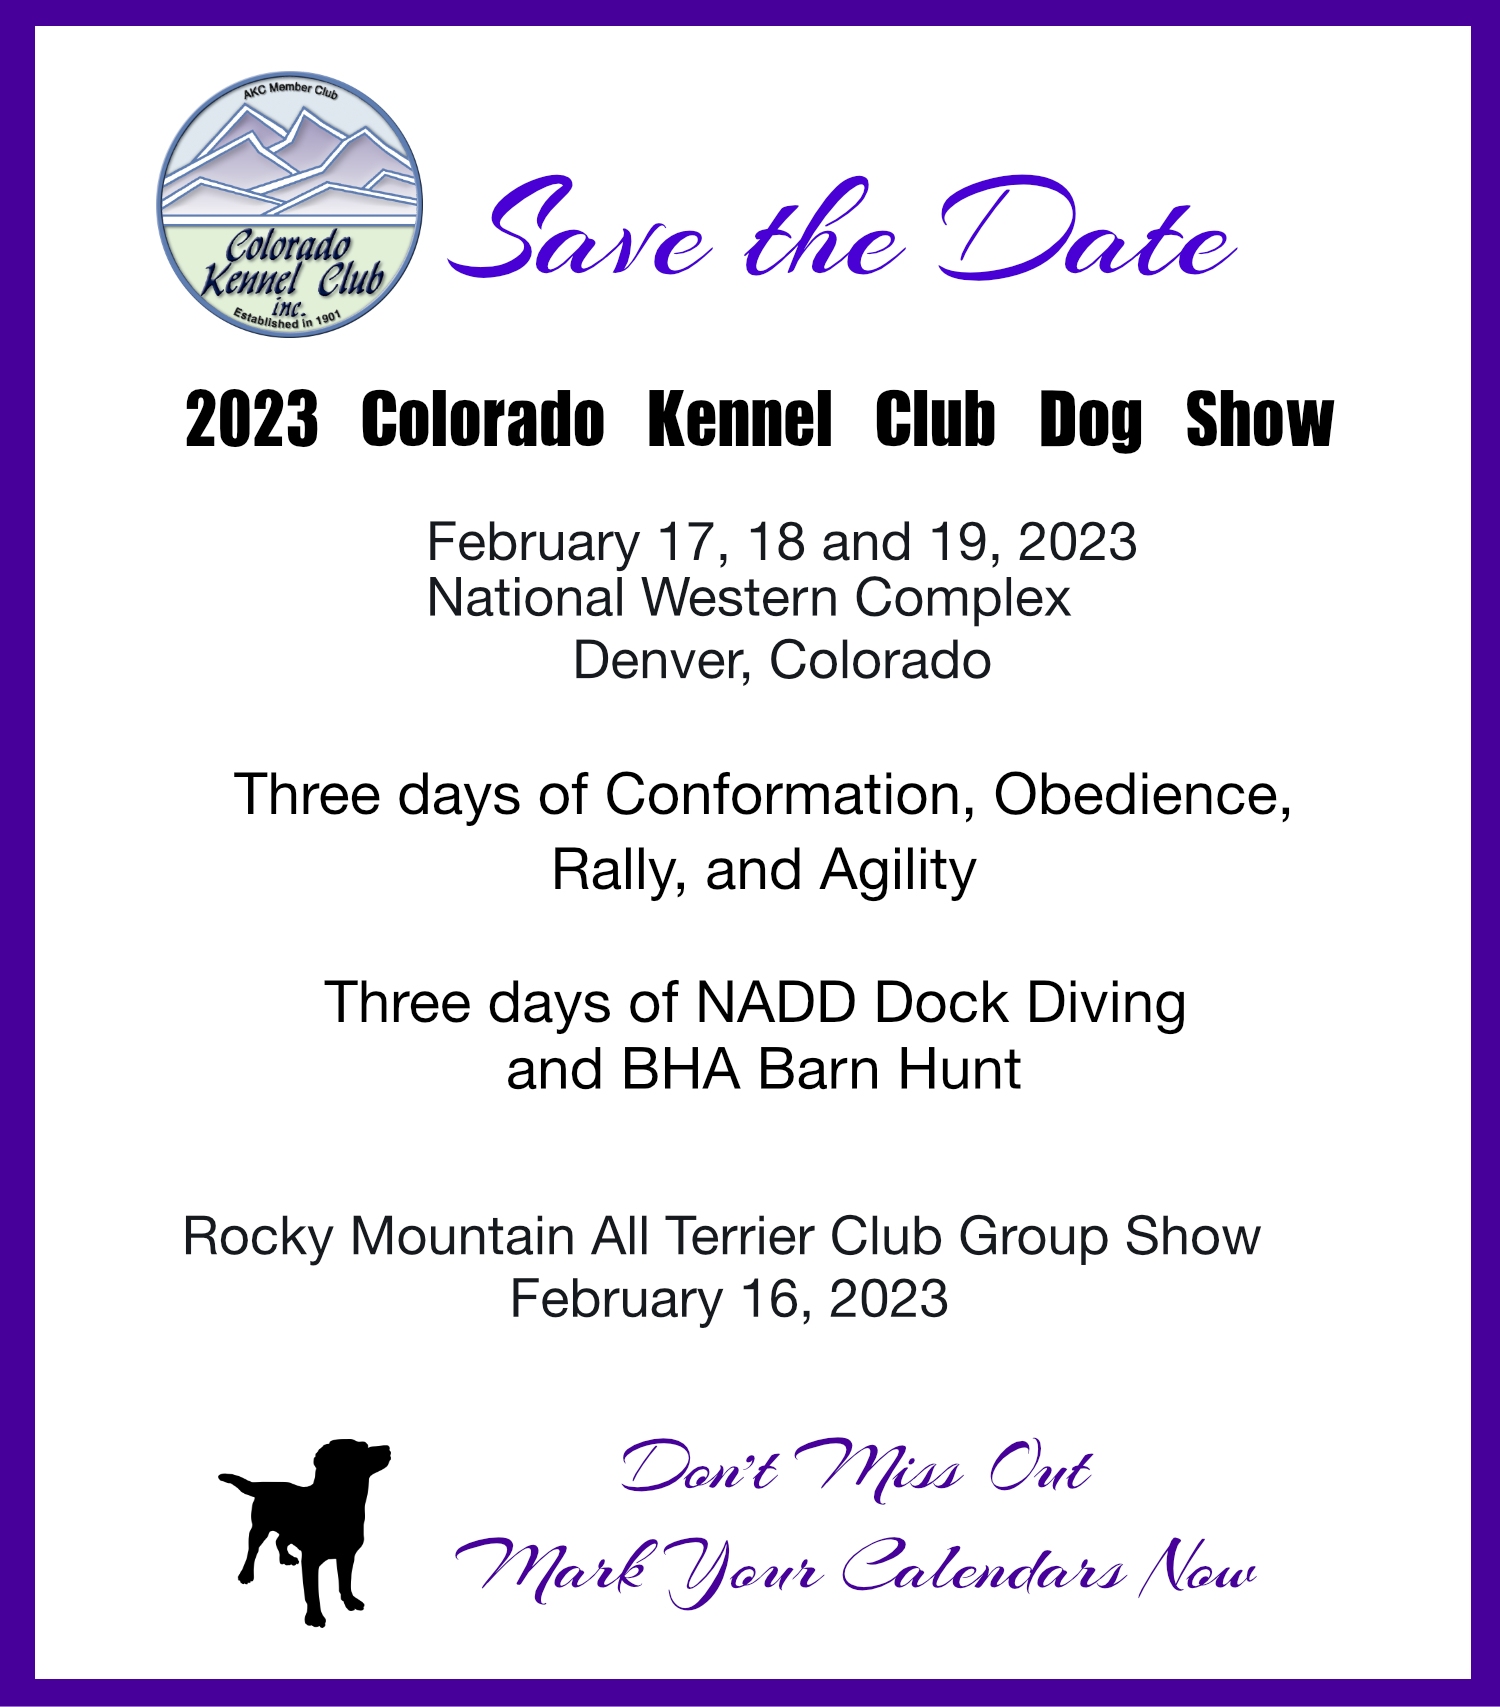 Colorado Kennel Club Dog Show